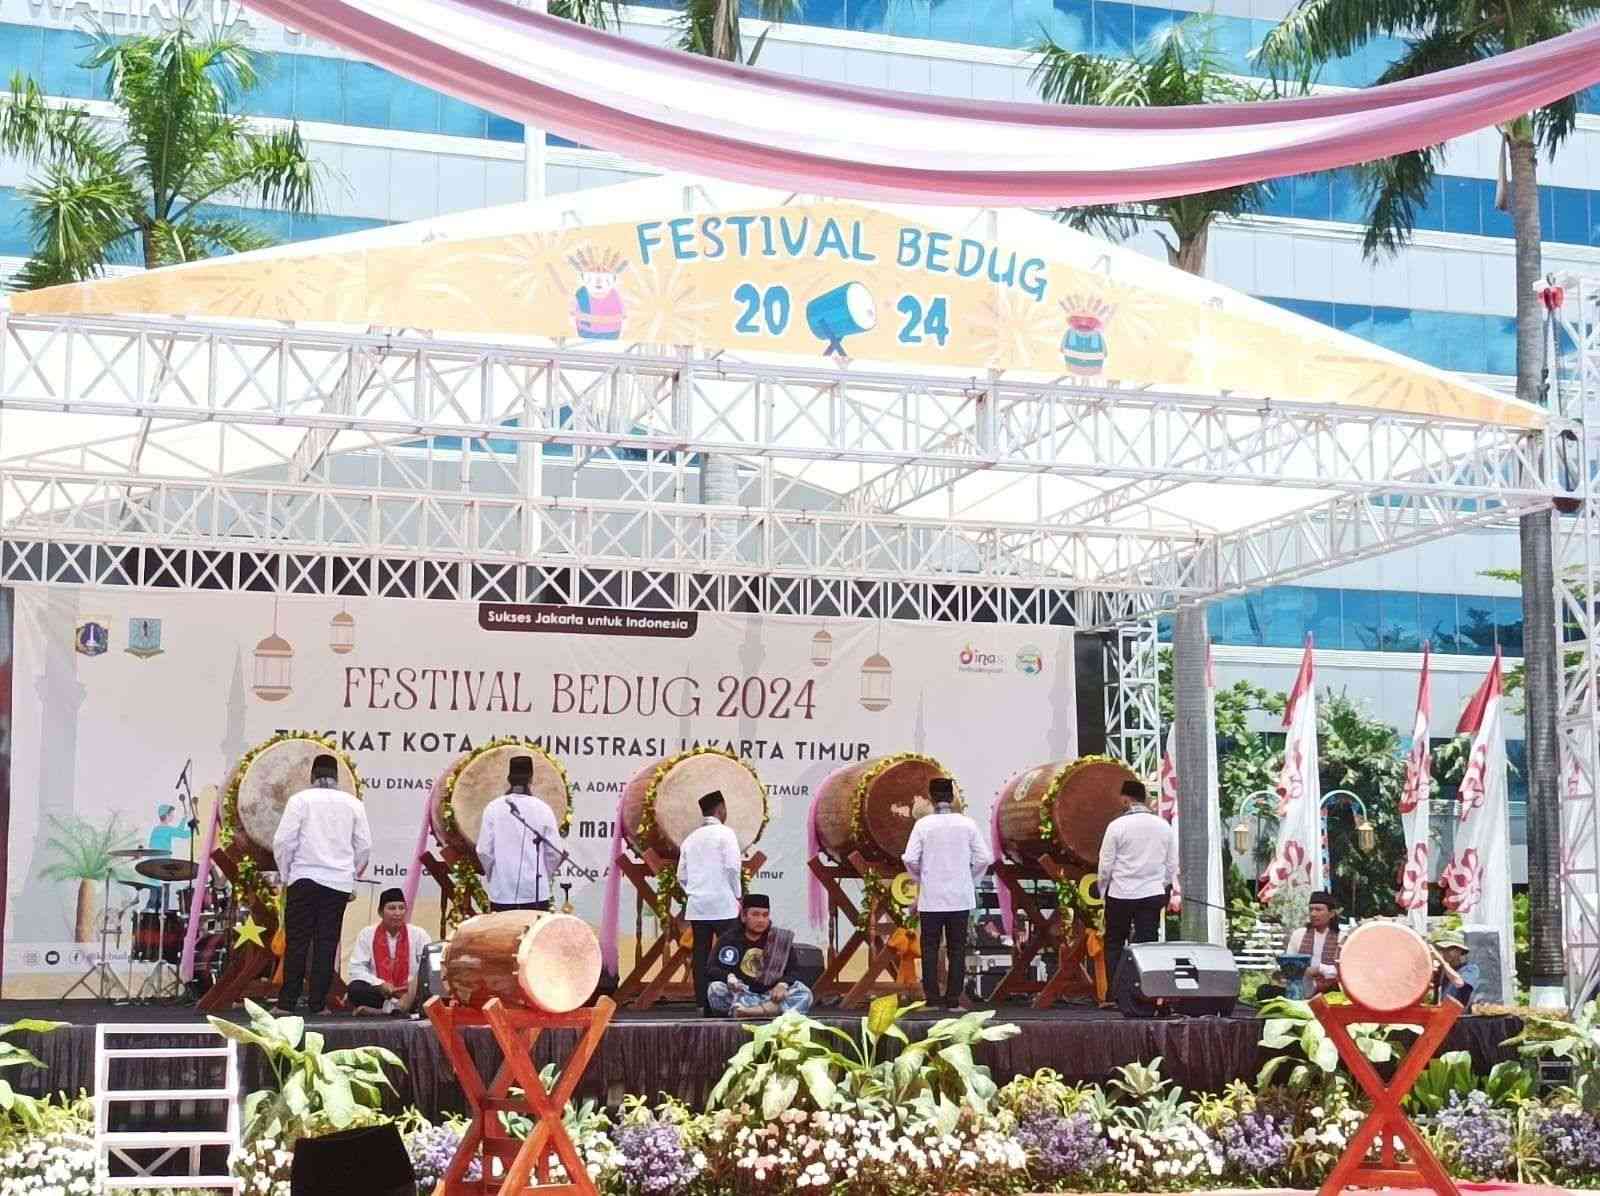 Festival bedug tingkat kota administrasi Jakarta Timur (Foto: RRI/Erik Hamzah)